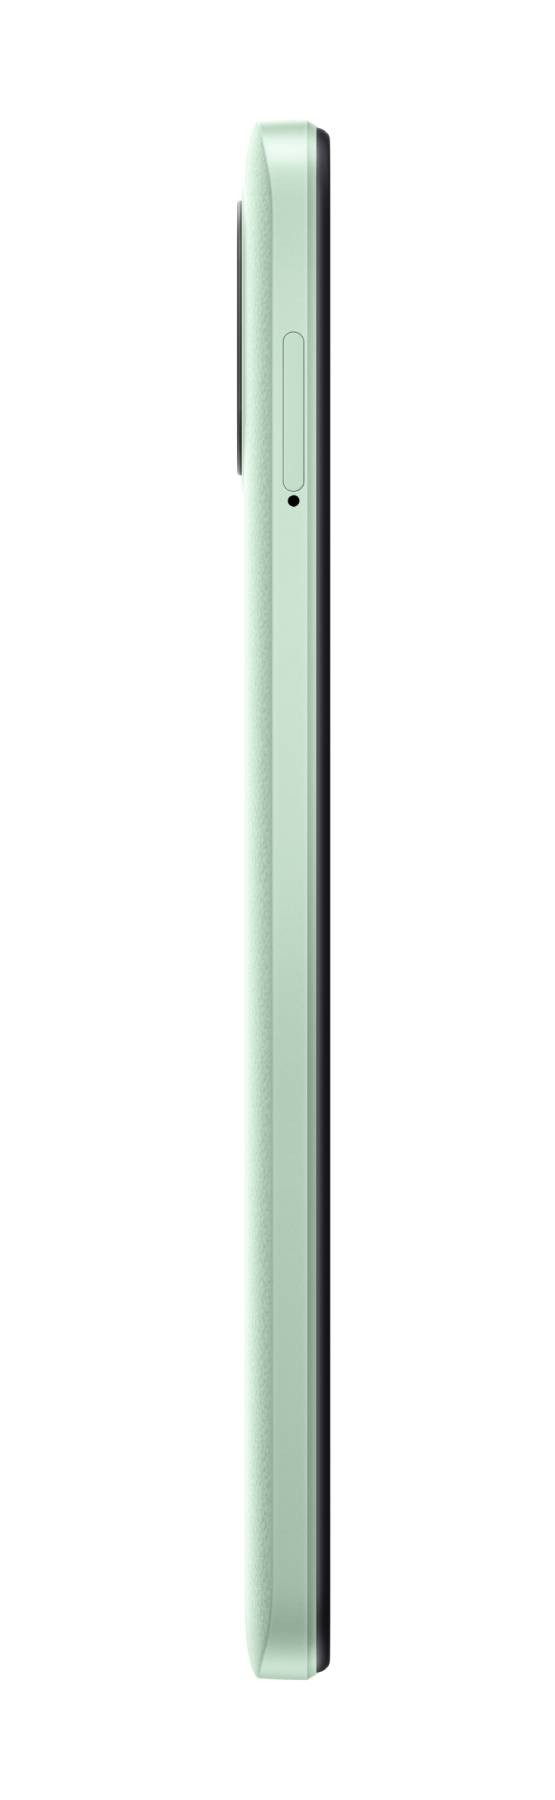 XIAOMI Smartphone Redmi A1 2 32Go Vert - REDMI-A1-2-32-GREEN